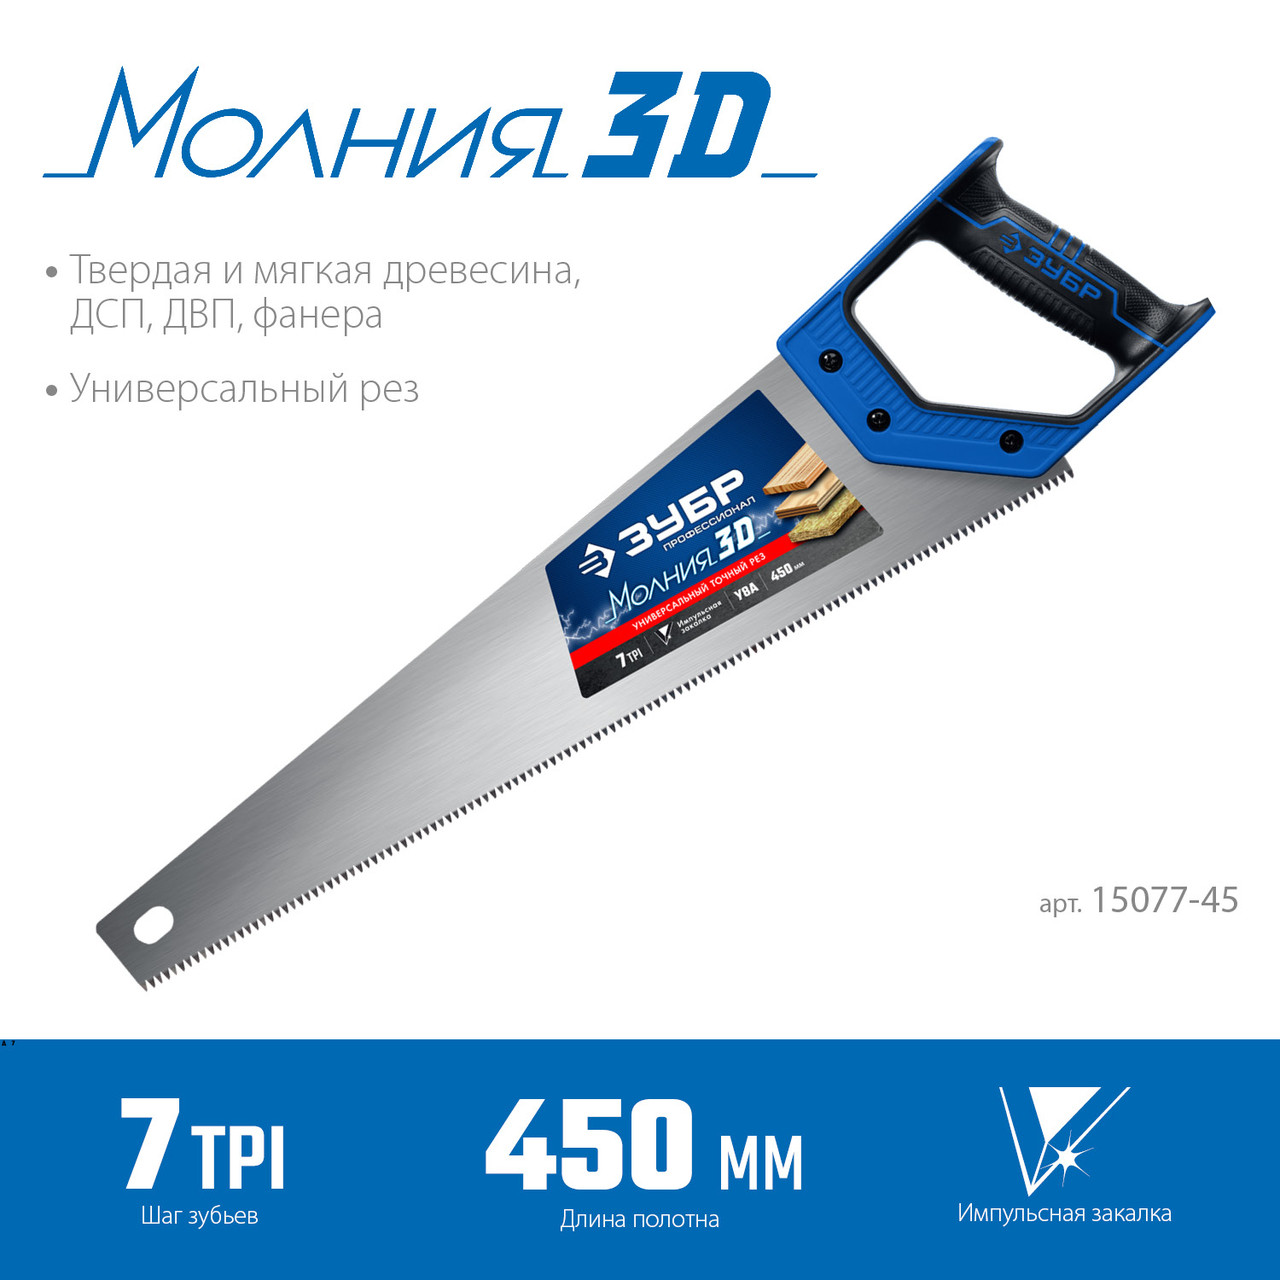 ЗУБР Молния-3D 450 мм, Универсальная ножовка (15077-45)